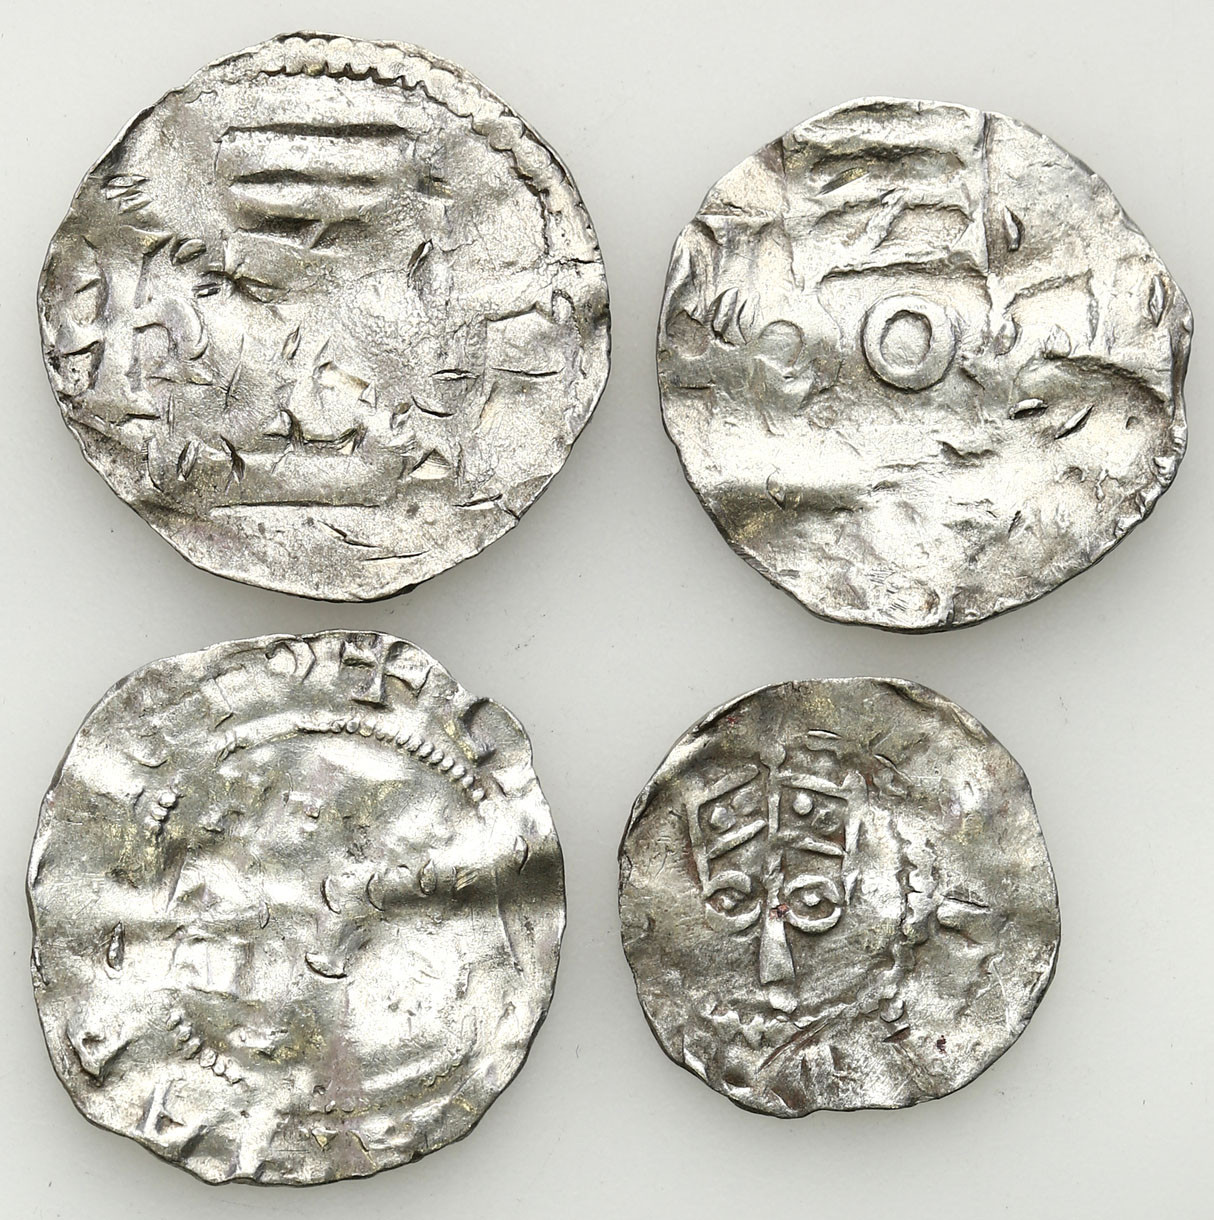 Niemcy, Dolna Lotaryngia - Kolonia, X/XI wiek. Denar typu kolońskiego i ich naśladownictwa, zestaw 4 monet